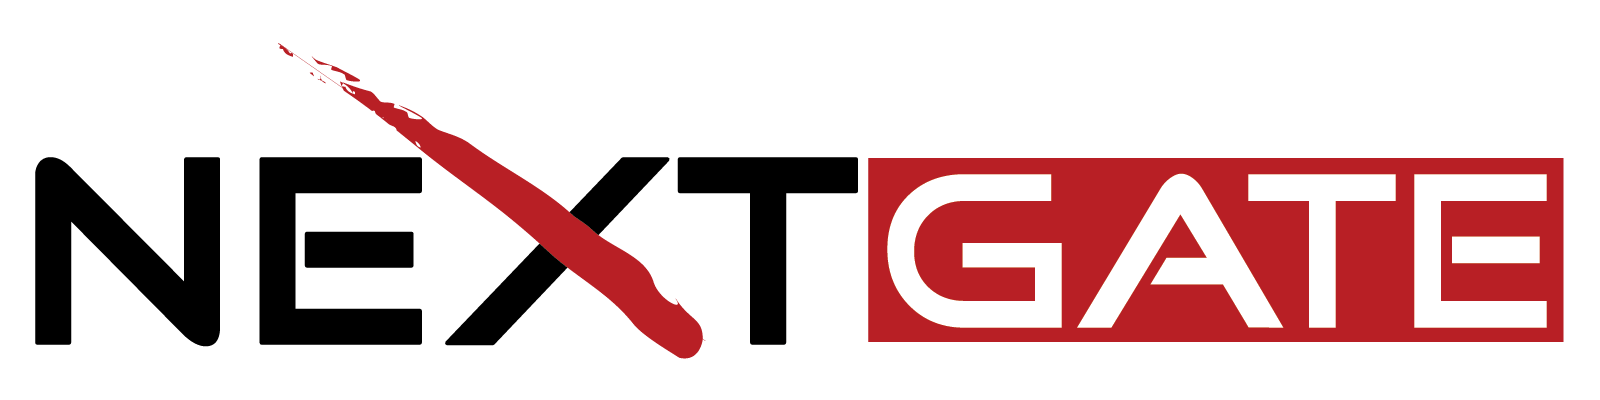 7 of 7 logos - NextGate logo